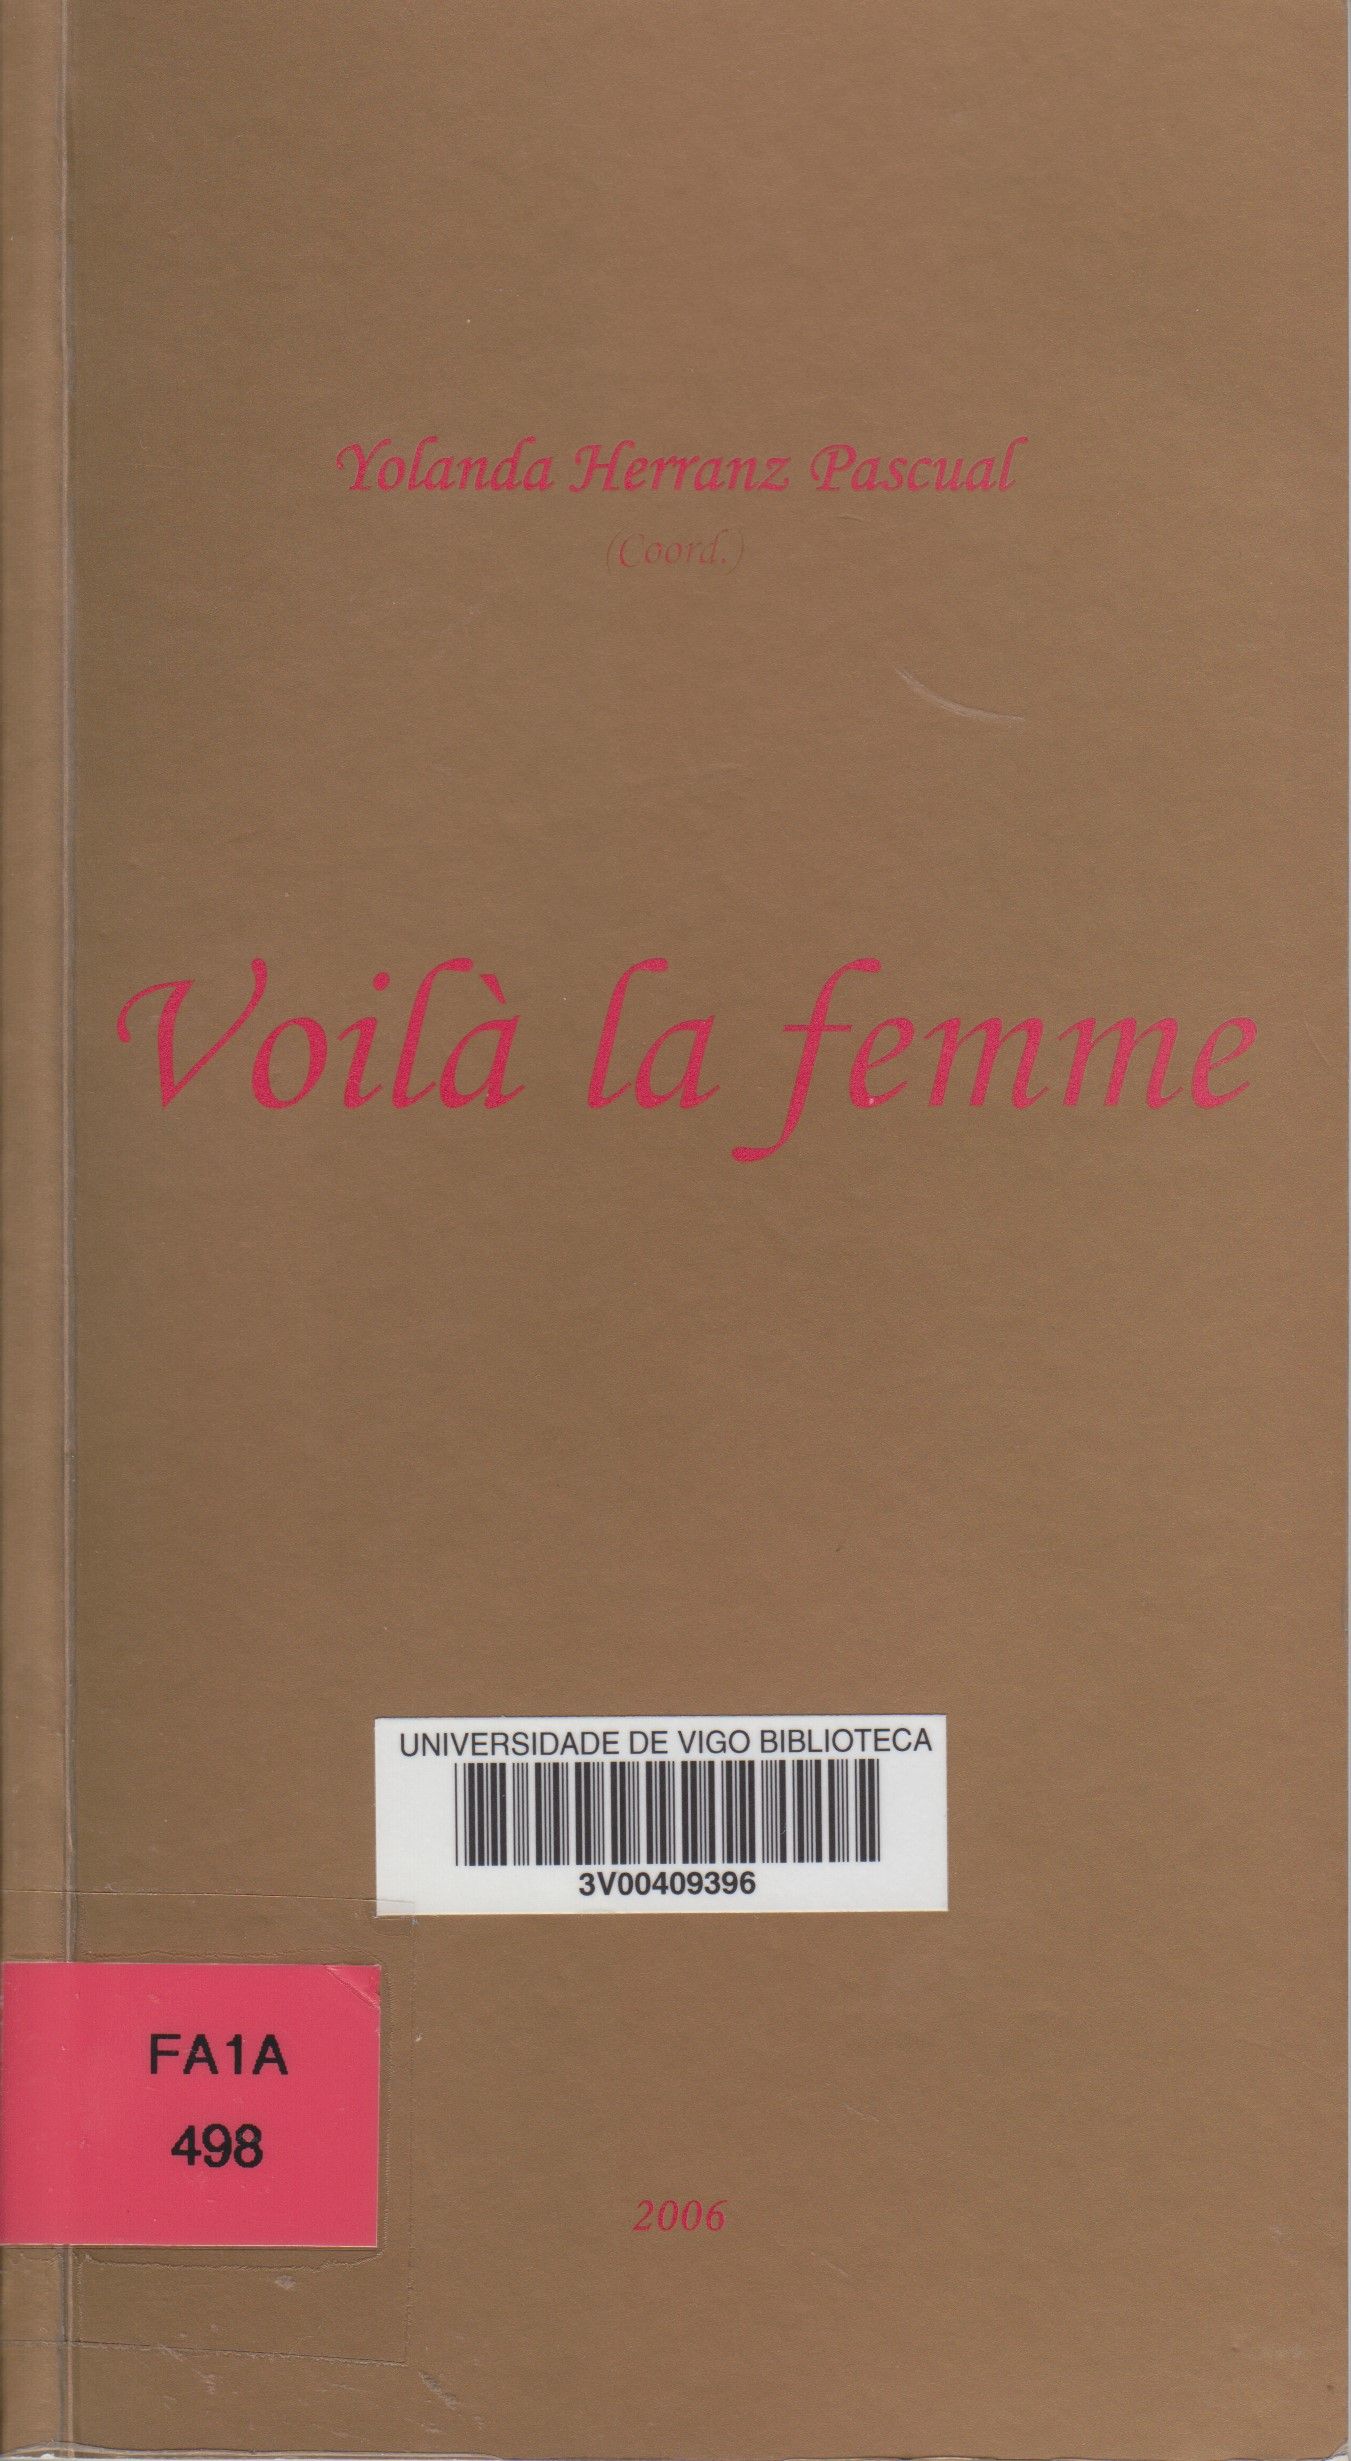 Imagen de portada del libro Voilà la femme